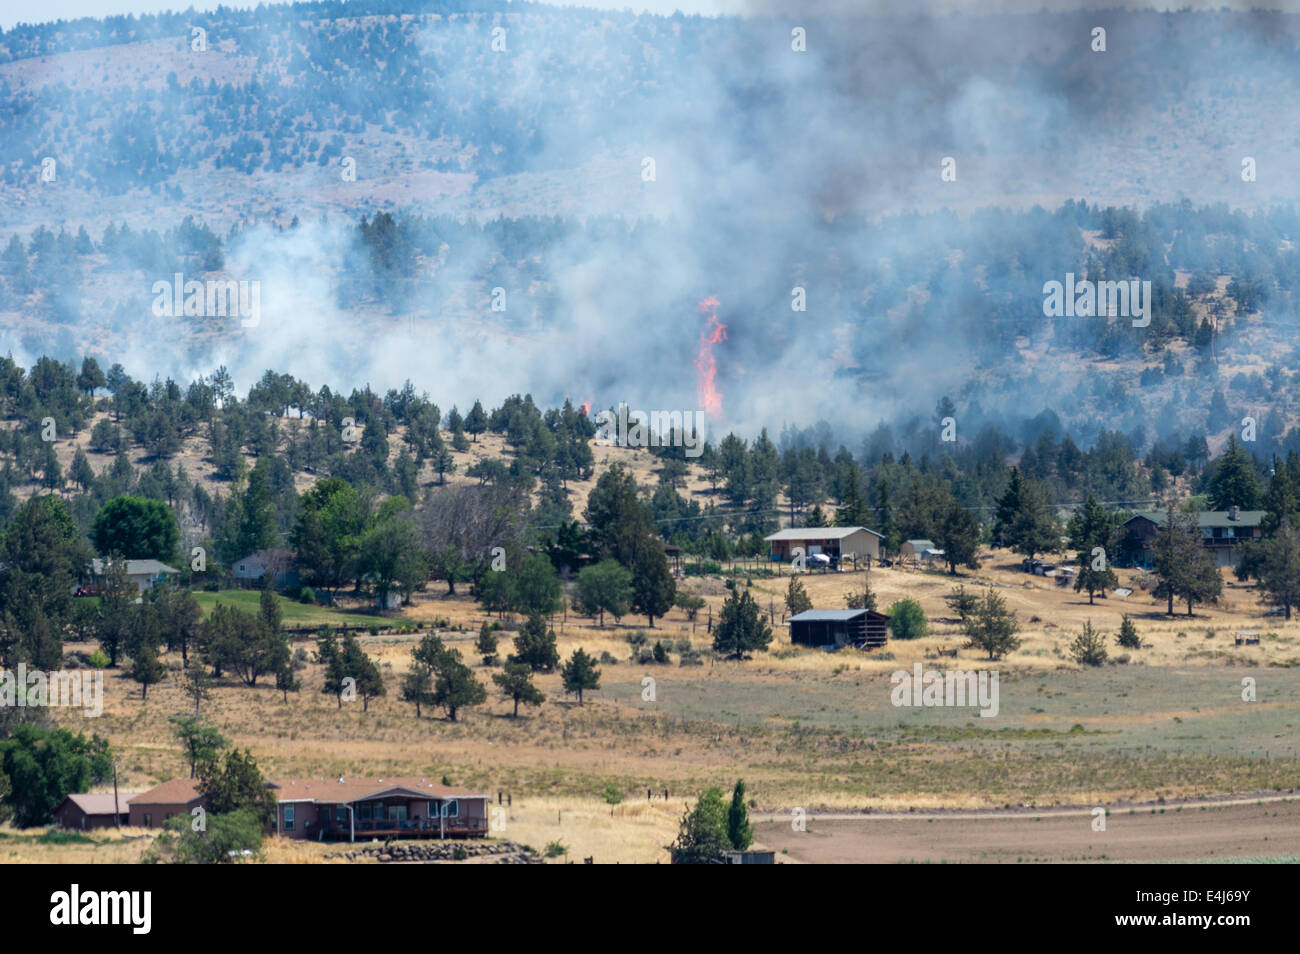 MADRAS, OREGON, 12. April 2014. Ein Lauffeuer bricht in Flamme in der Nähe von Häusern und Nebengebäuden vor den Toren der Stadt von Madras, Oregon in Zentral-Oregon. Stockfoto